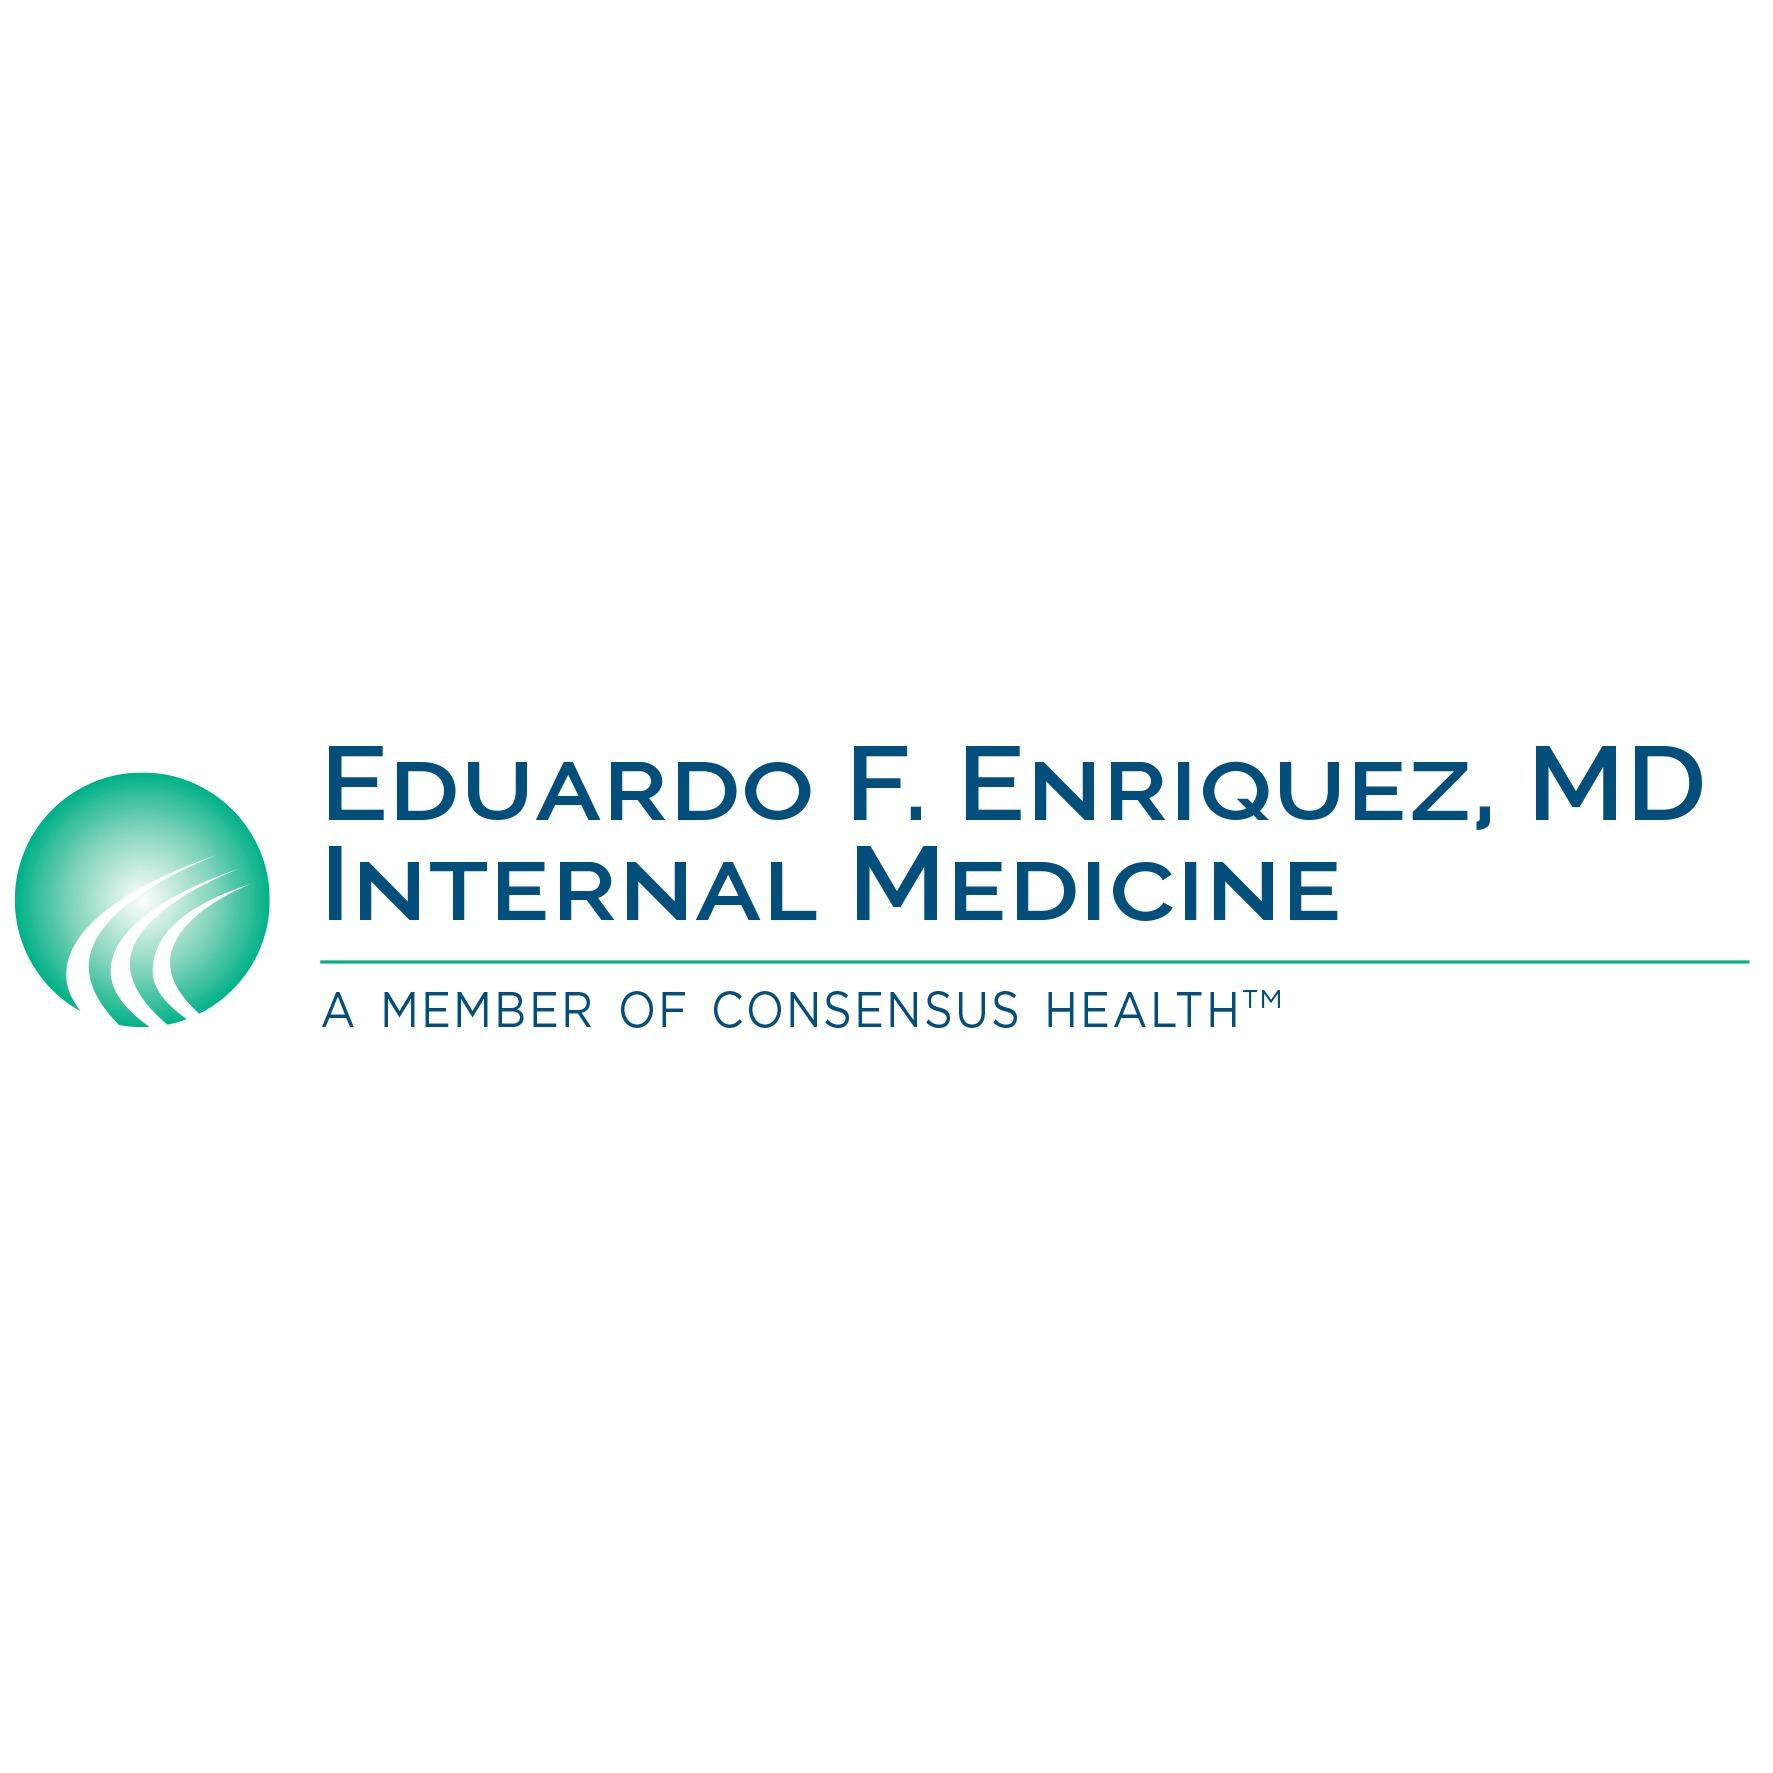 Eduardo F. Enriquez, MD